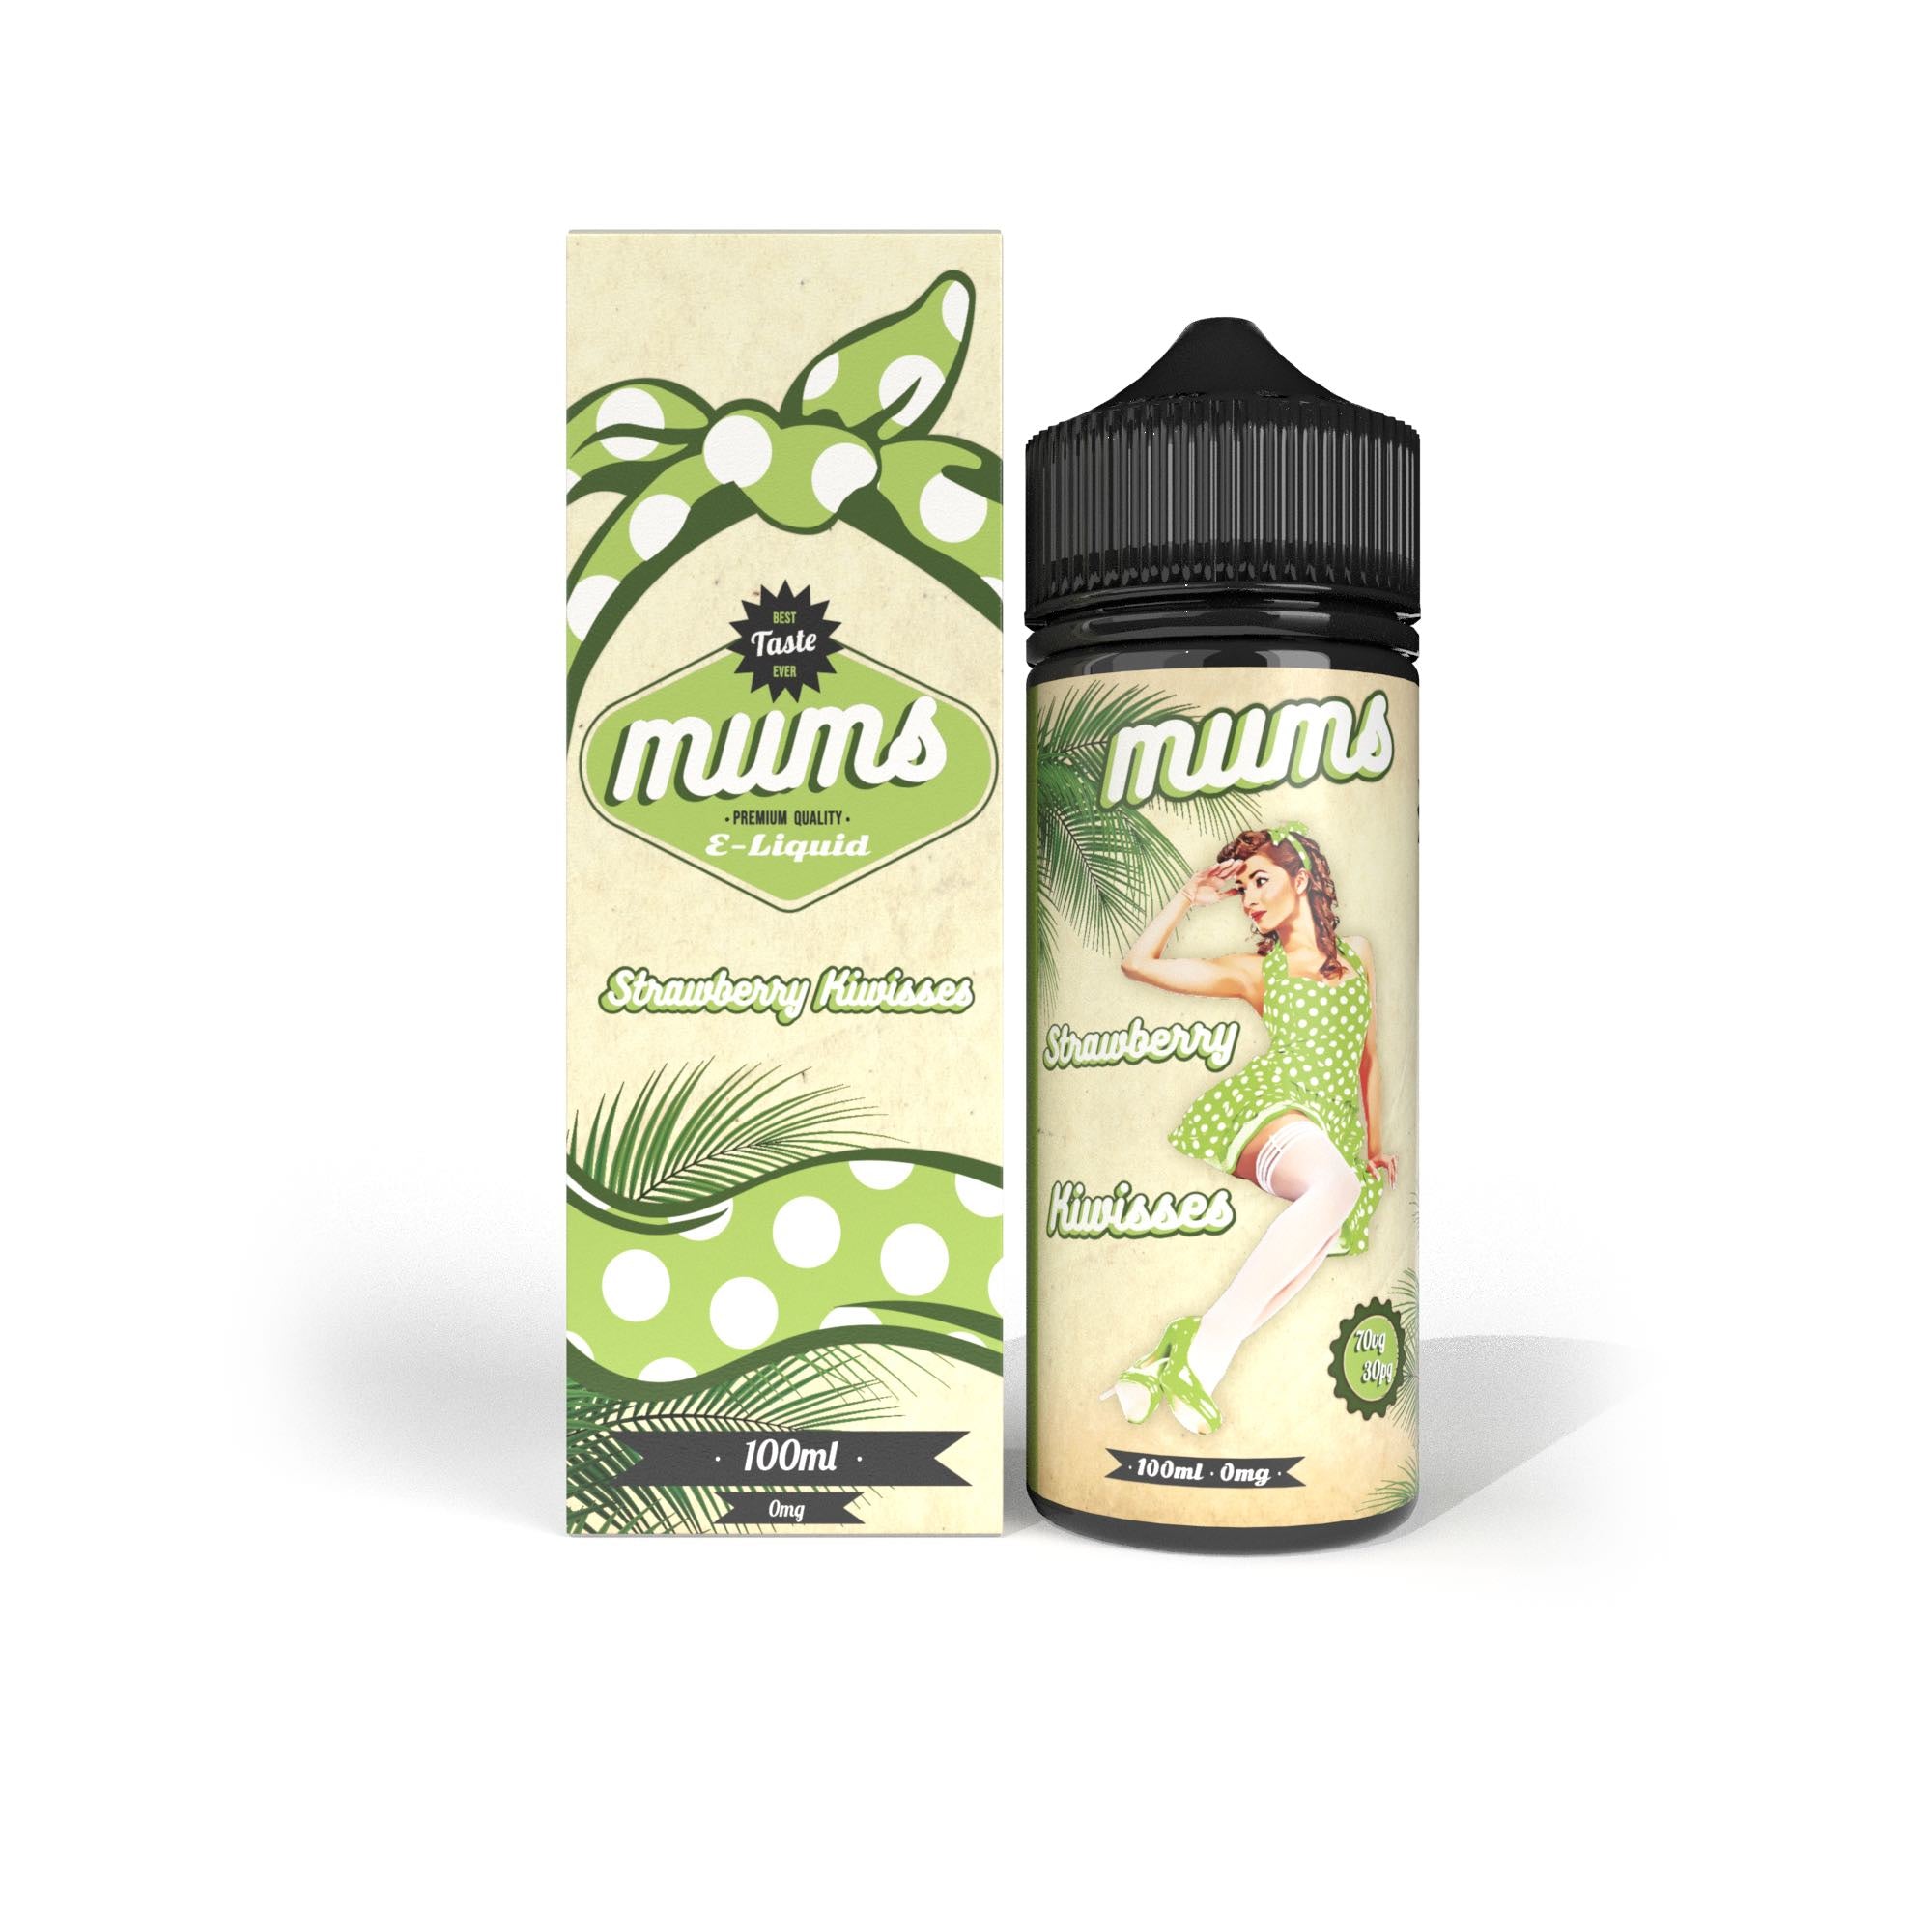 Mums Premium E-liquid | Strawberry Kiwisses | 100ml | Wholesale